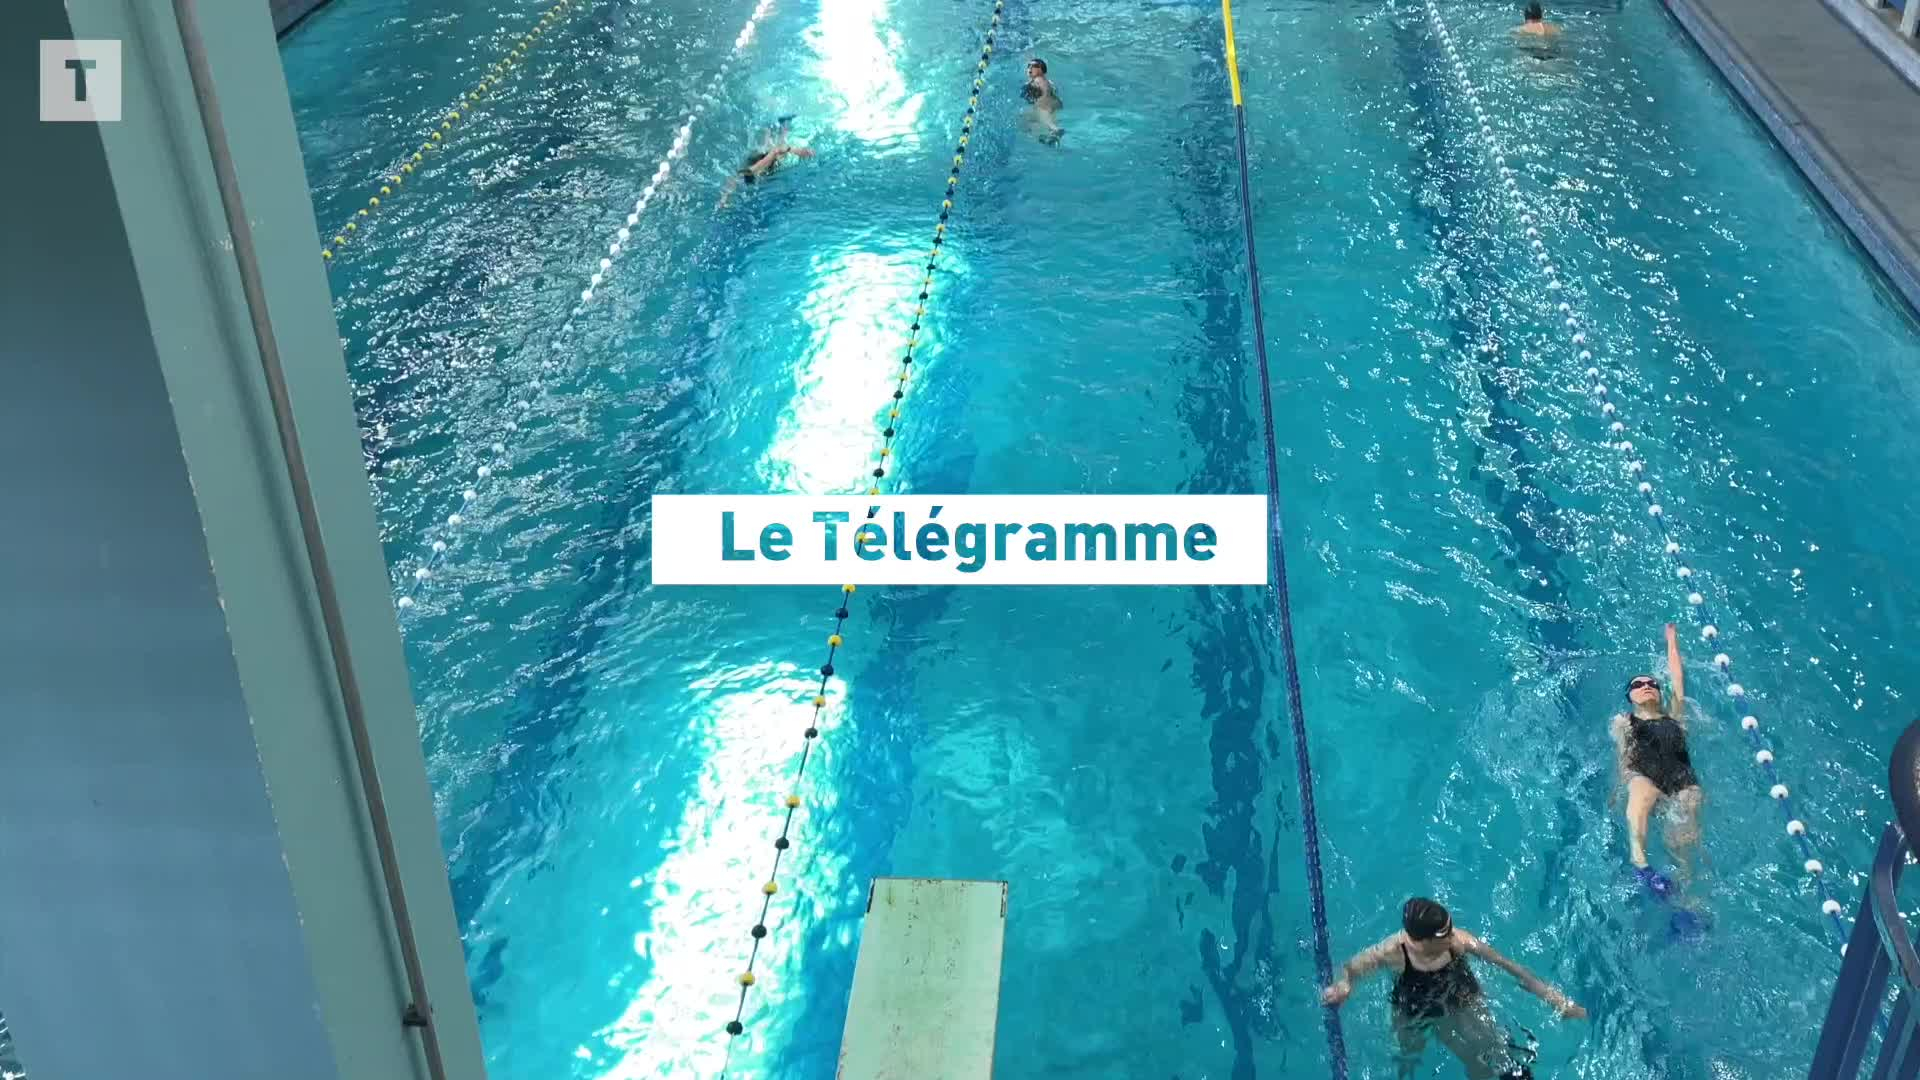 Bienvenue dans les coulisses de la piscine Saint-Georges, un bijou art déco du patrimoine de Rennes  (Le Télégramme)